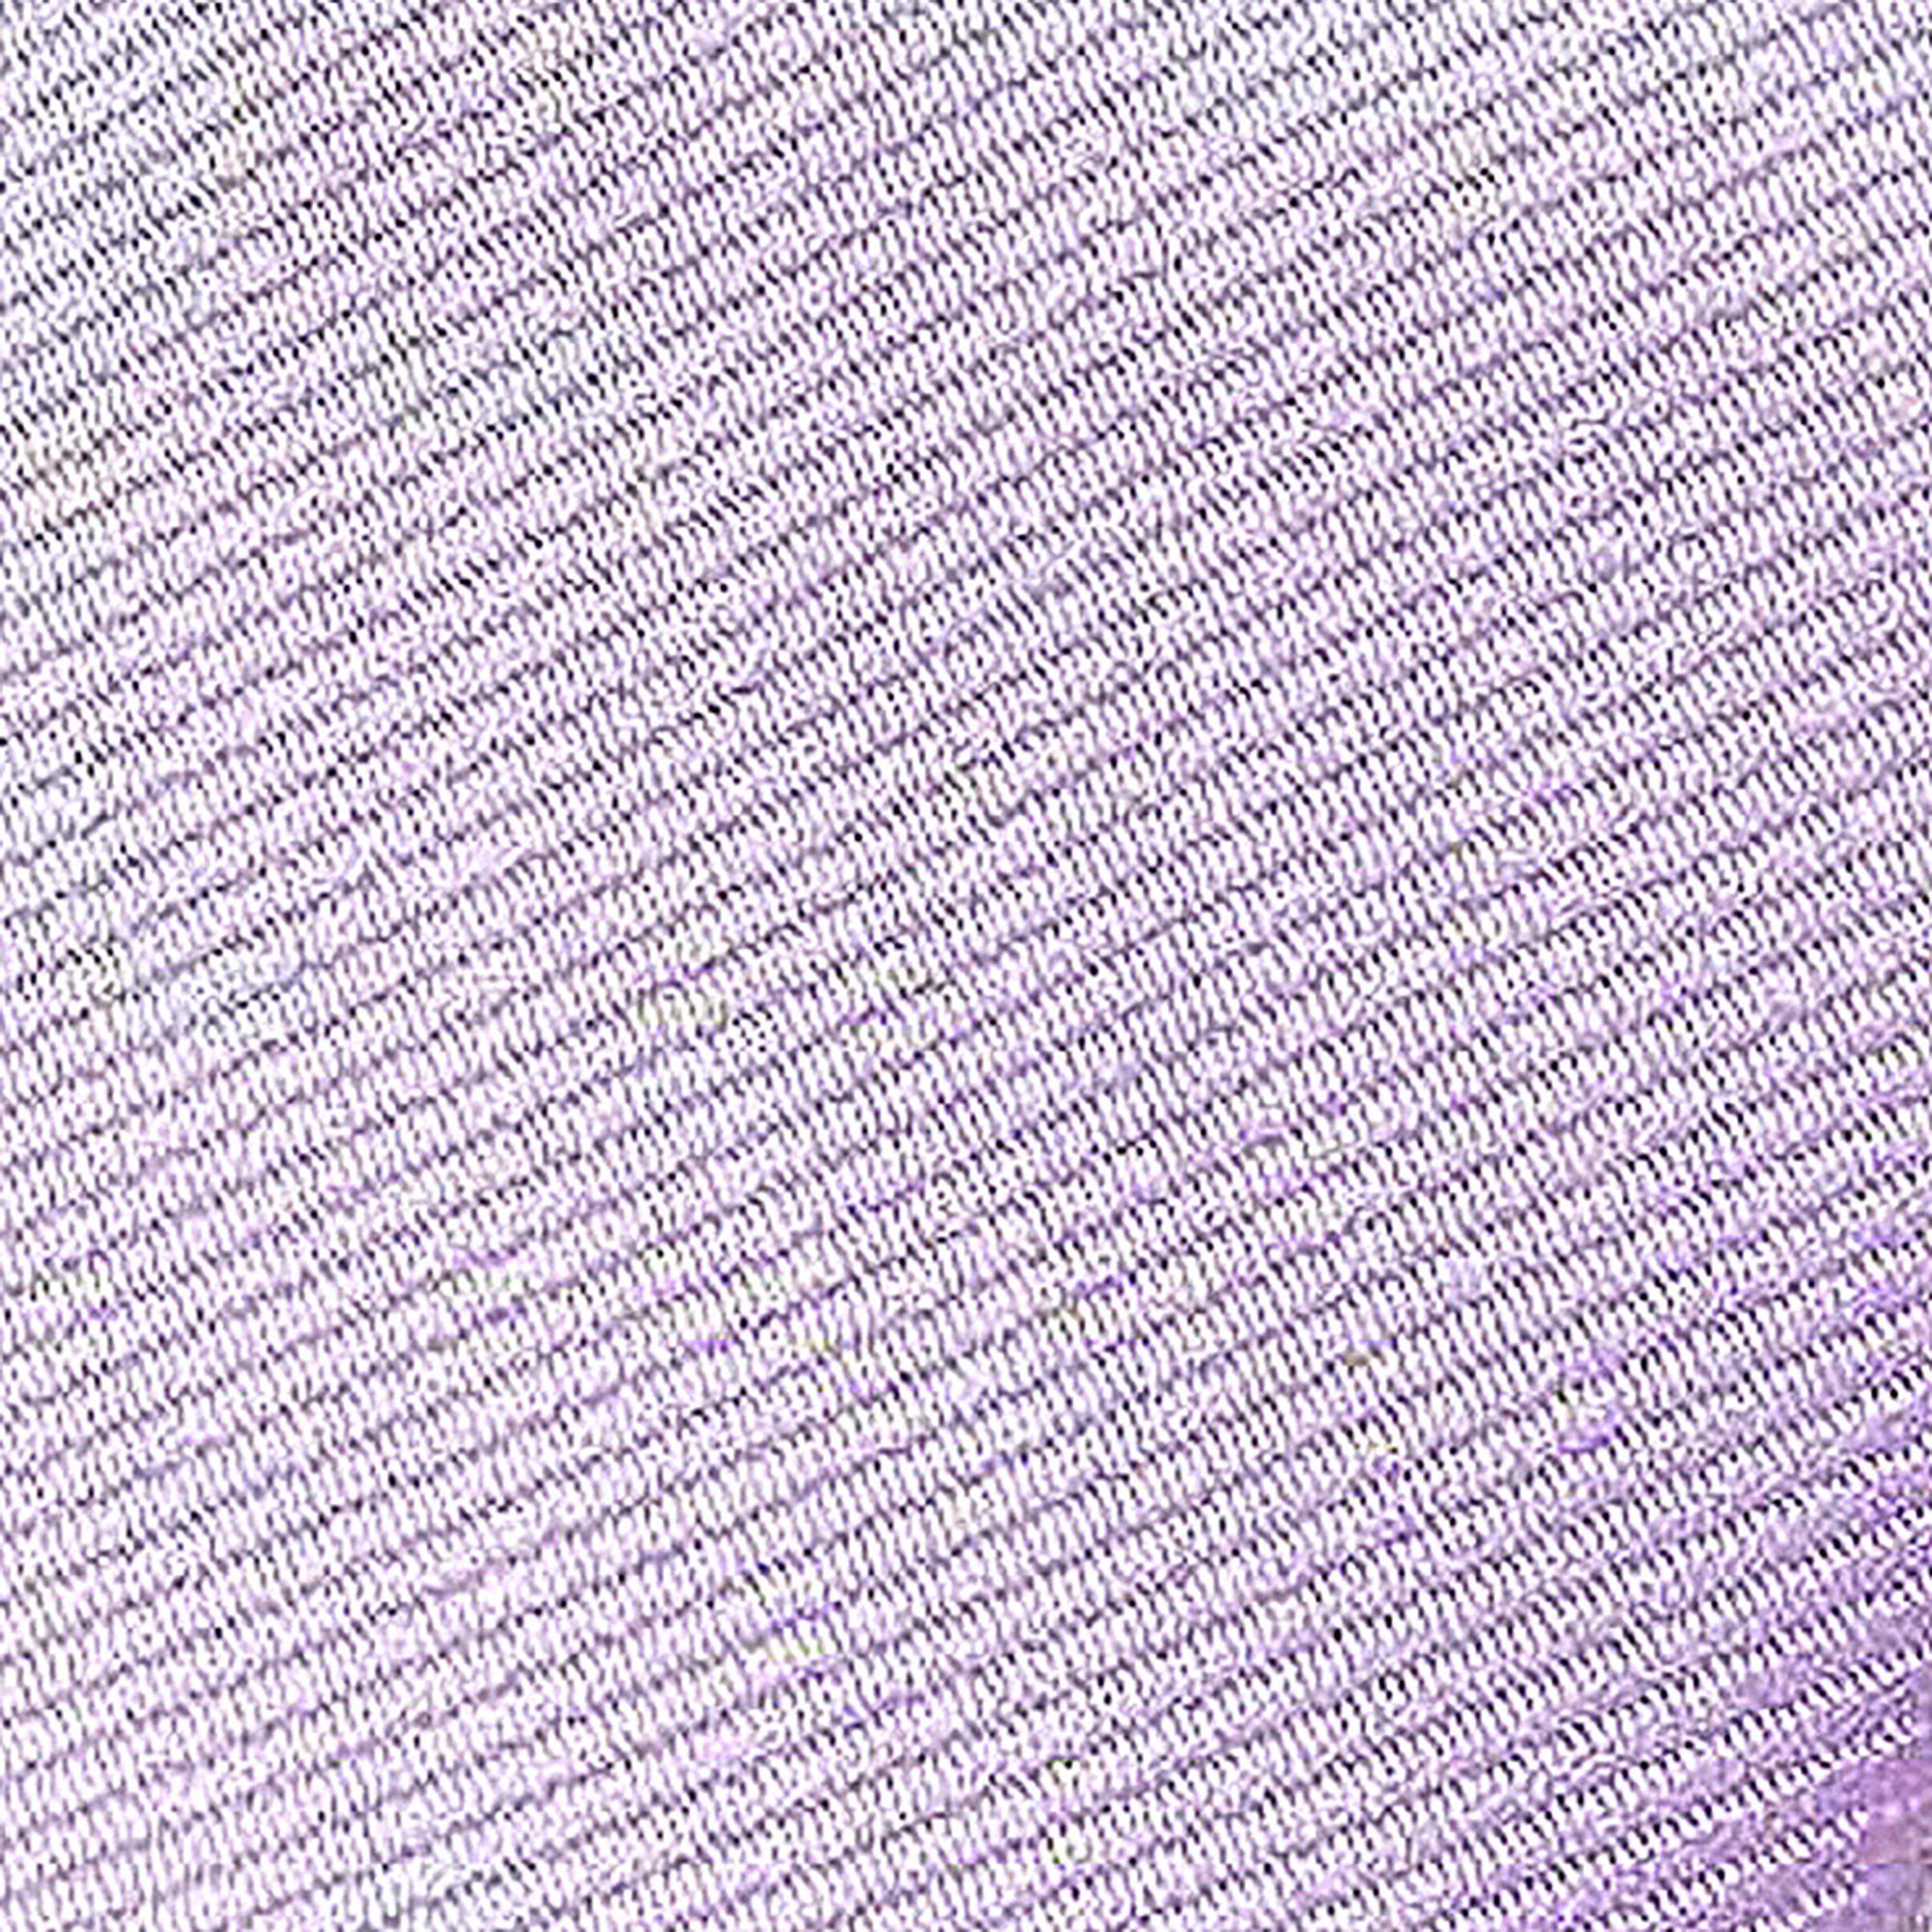 GASSANI Krawatte Geschenk-Box Feine Mauve mit Gestreifte Pastell-Violett Dose Blau-Violett Slim-Fit (set, Herren-Krawatte Männer Männer-Schlips Geschenkverpackung) Blech-Spardose, In Perlviolett Uni Helles Seide-Touch Streifen, Flieder-Violett Veilchenblau Lila-Blass-Blau Blassviolett Schmale Rips Rippen 2-St., Business-Krawatte